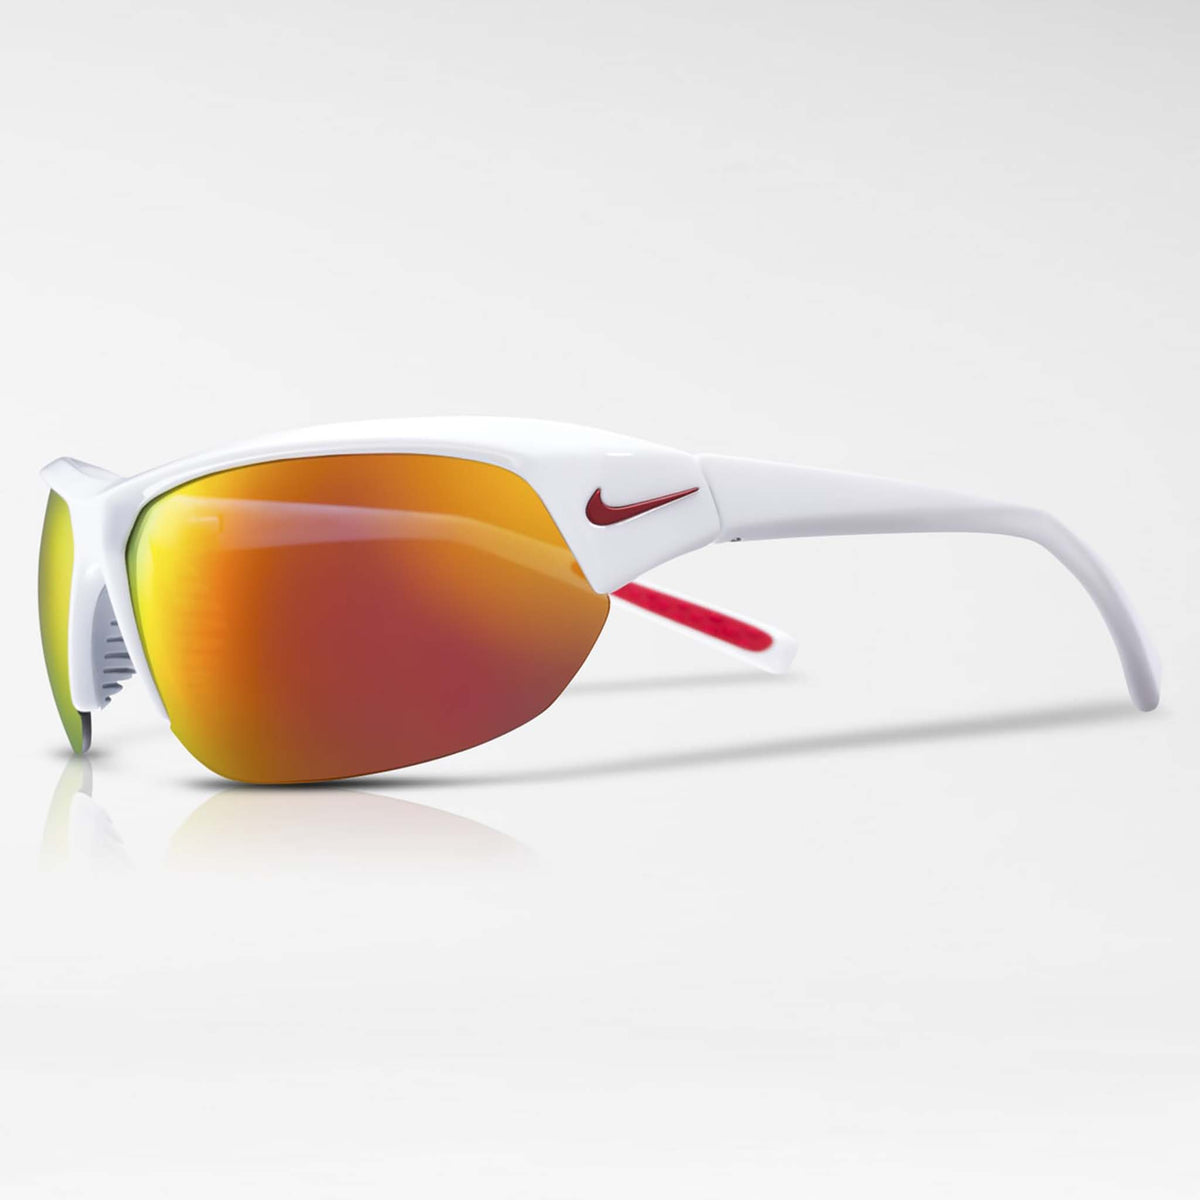 Nike Skylon Ace lunettes de soleil sport blanc gris rouge miroir lateral